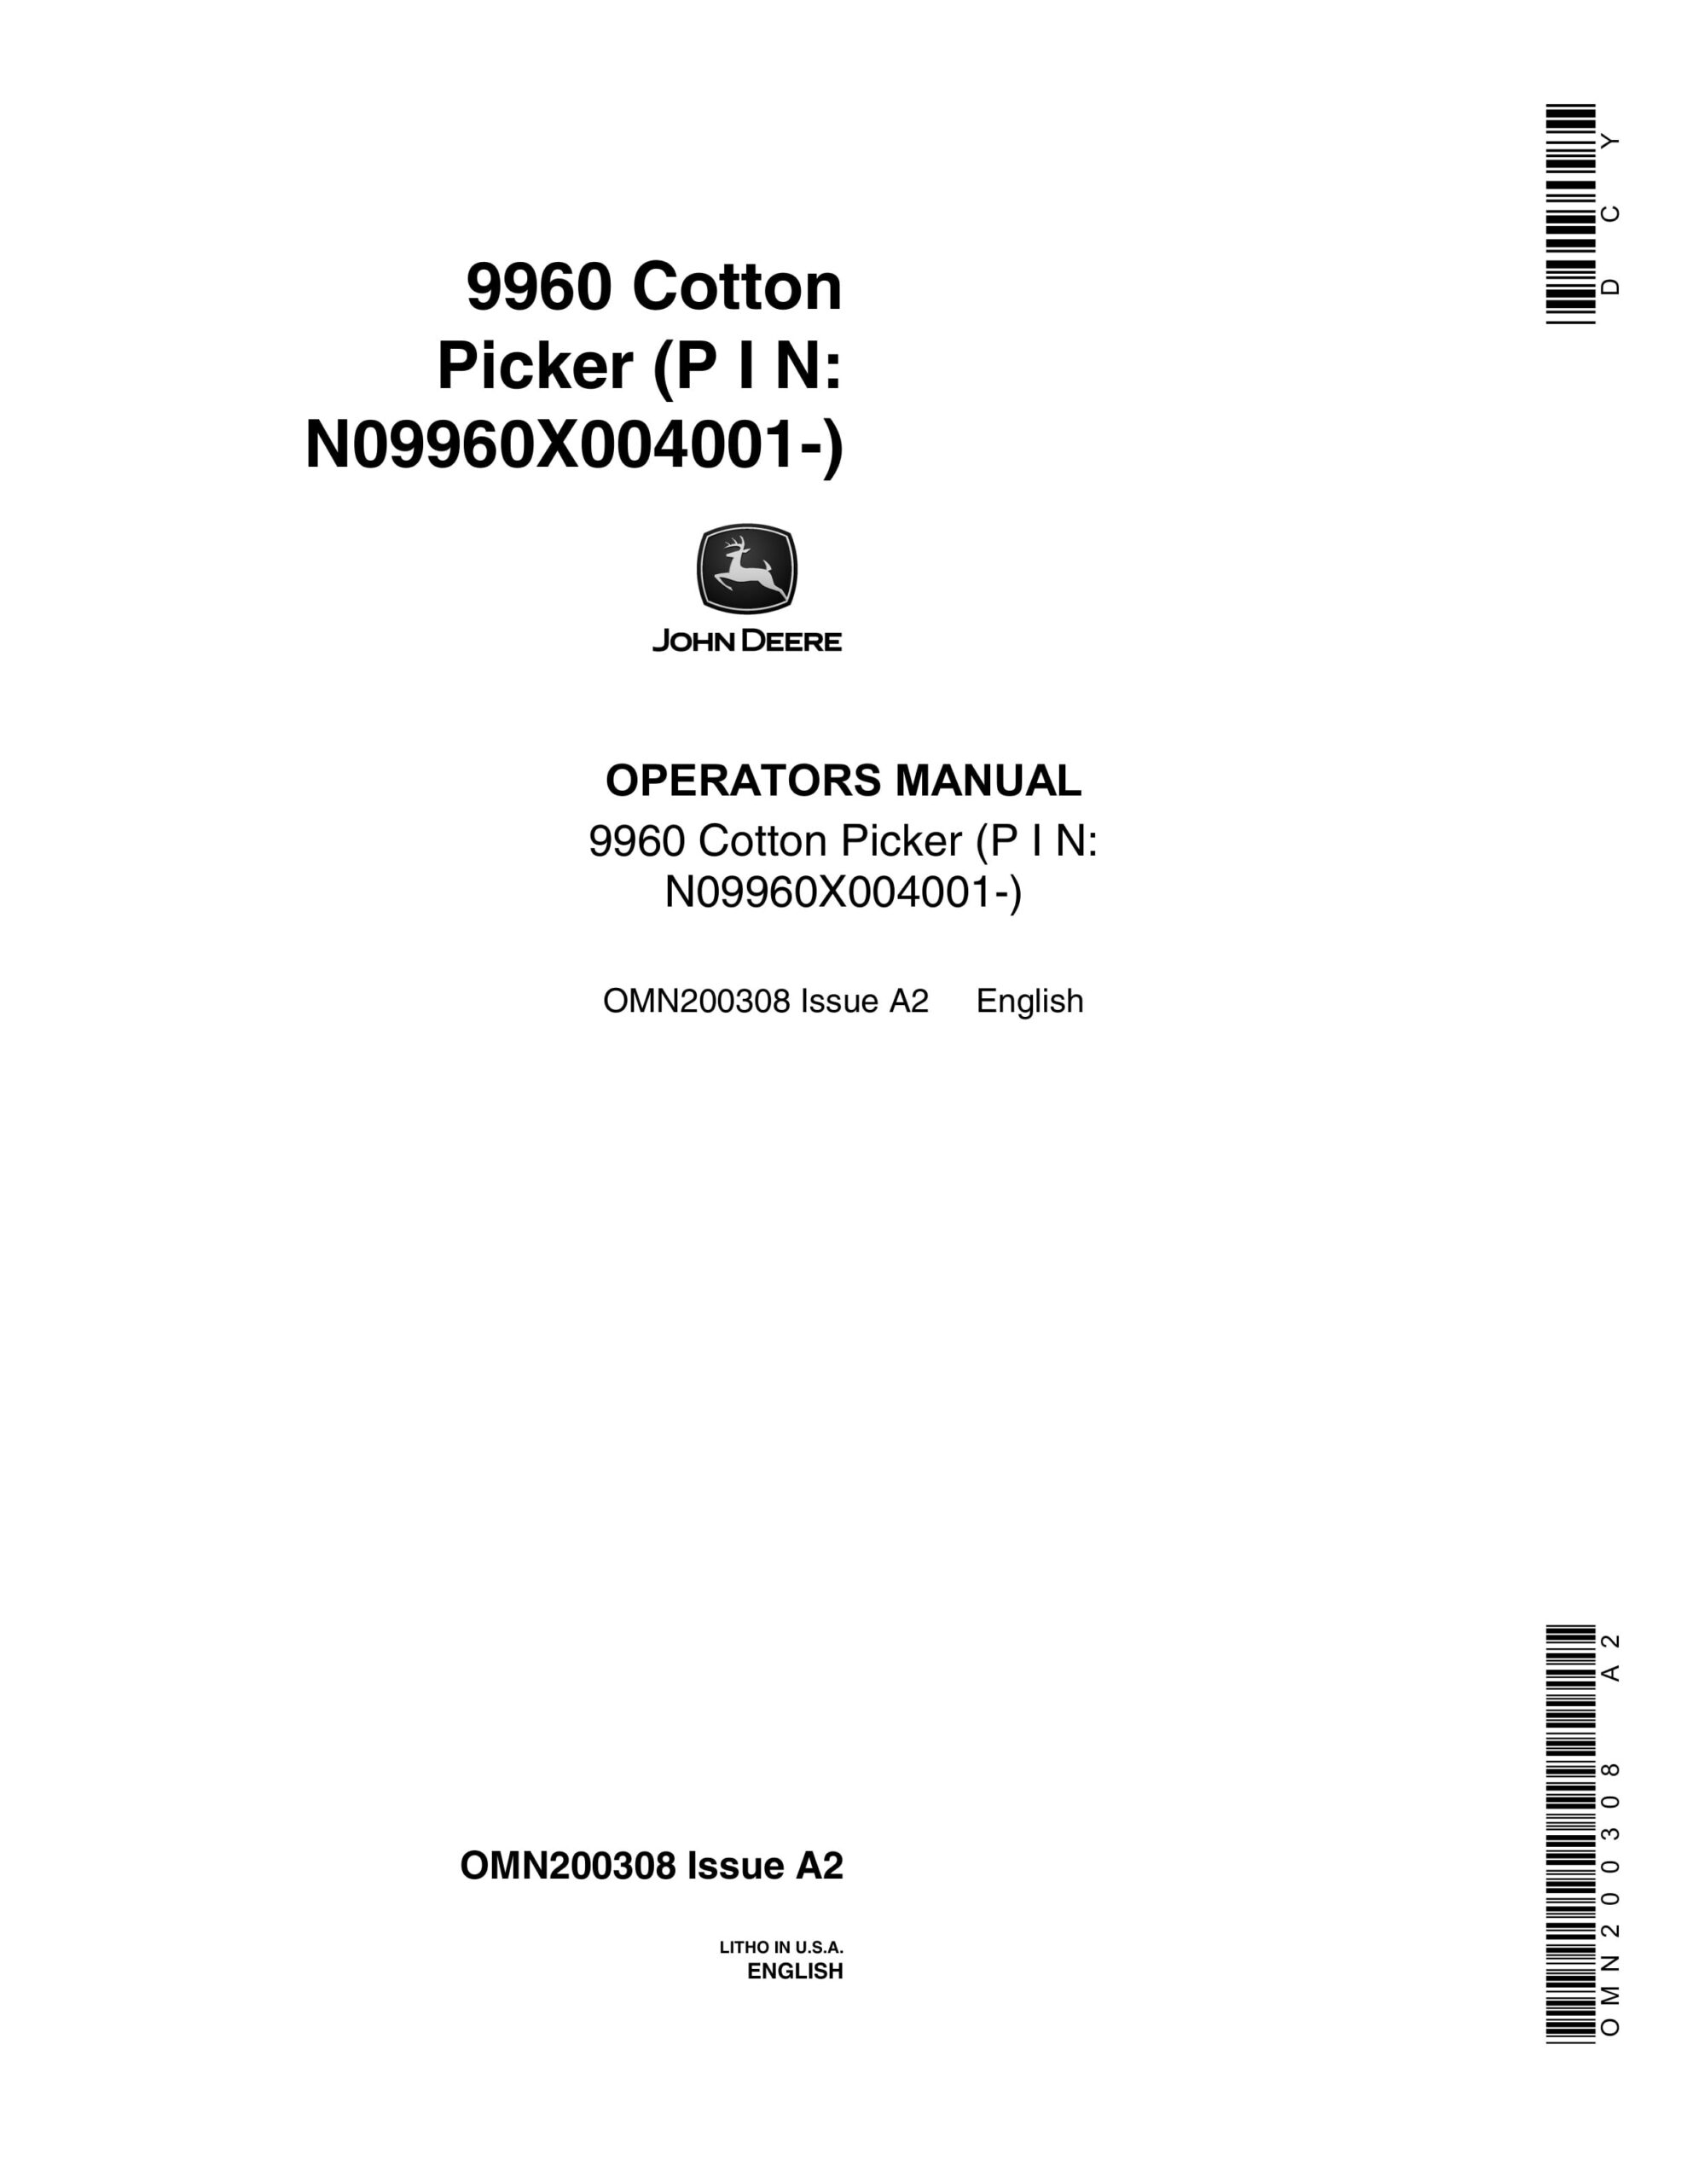 John Deere 9960 COTTON PICKER Operator Manual OMN200308-1